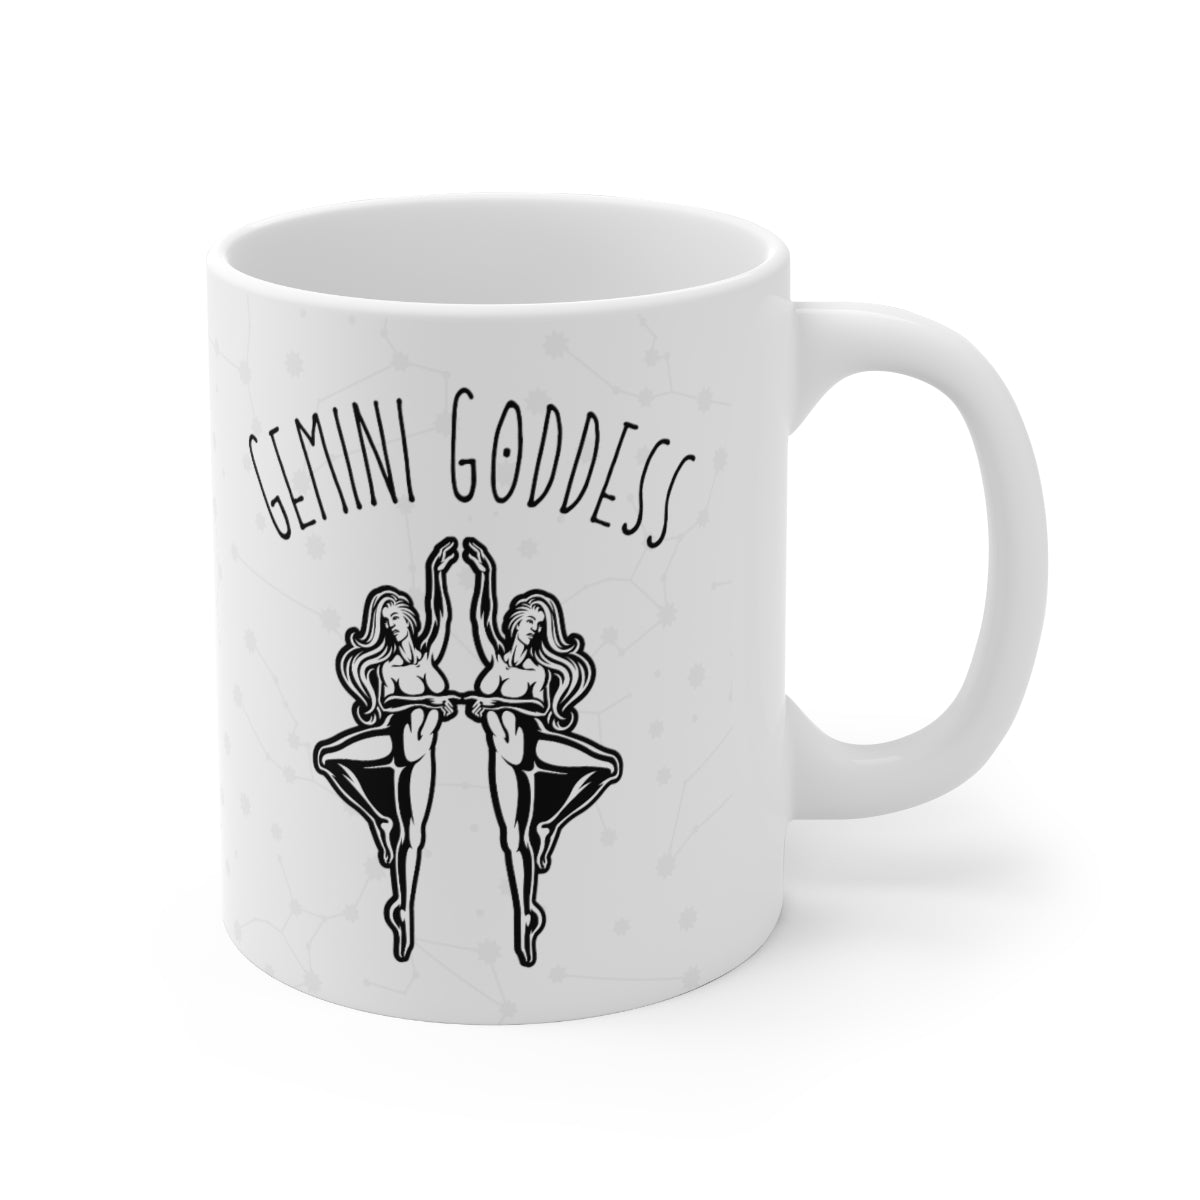 Gemini Goddess Astrology Mug 4